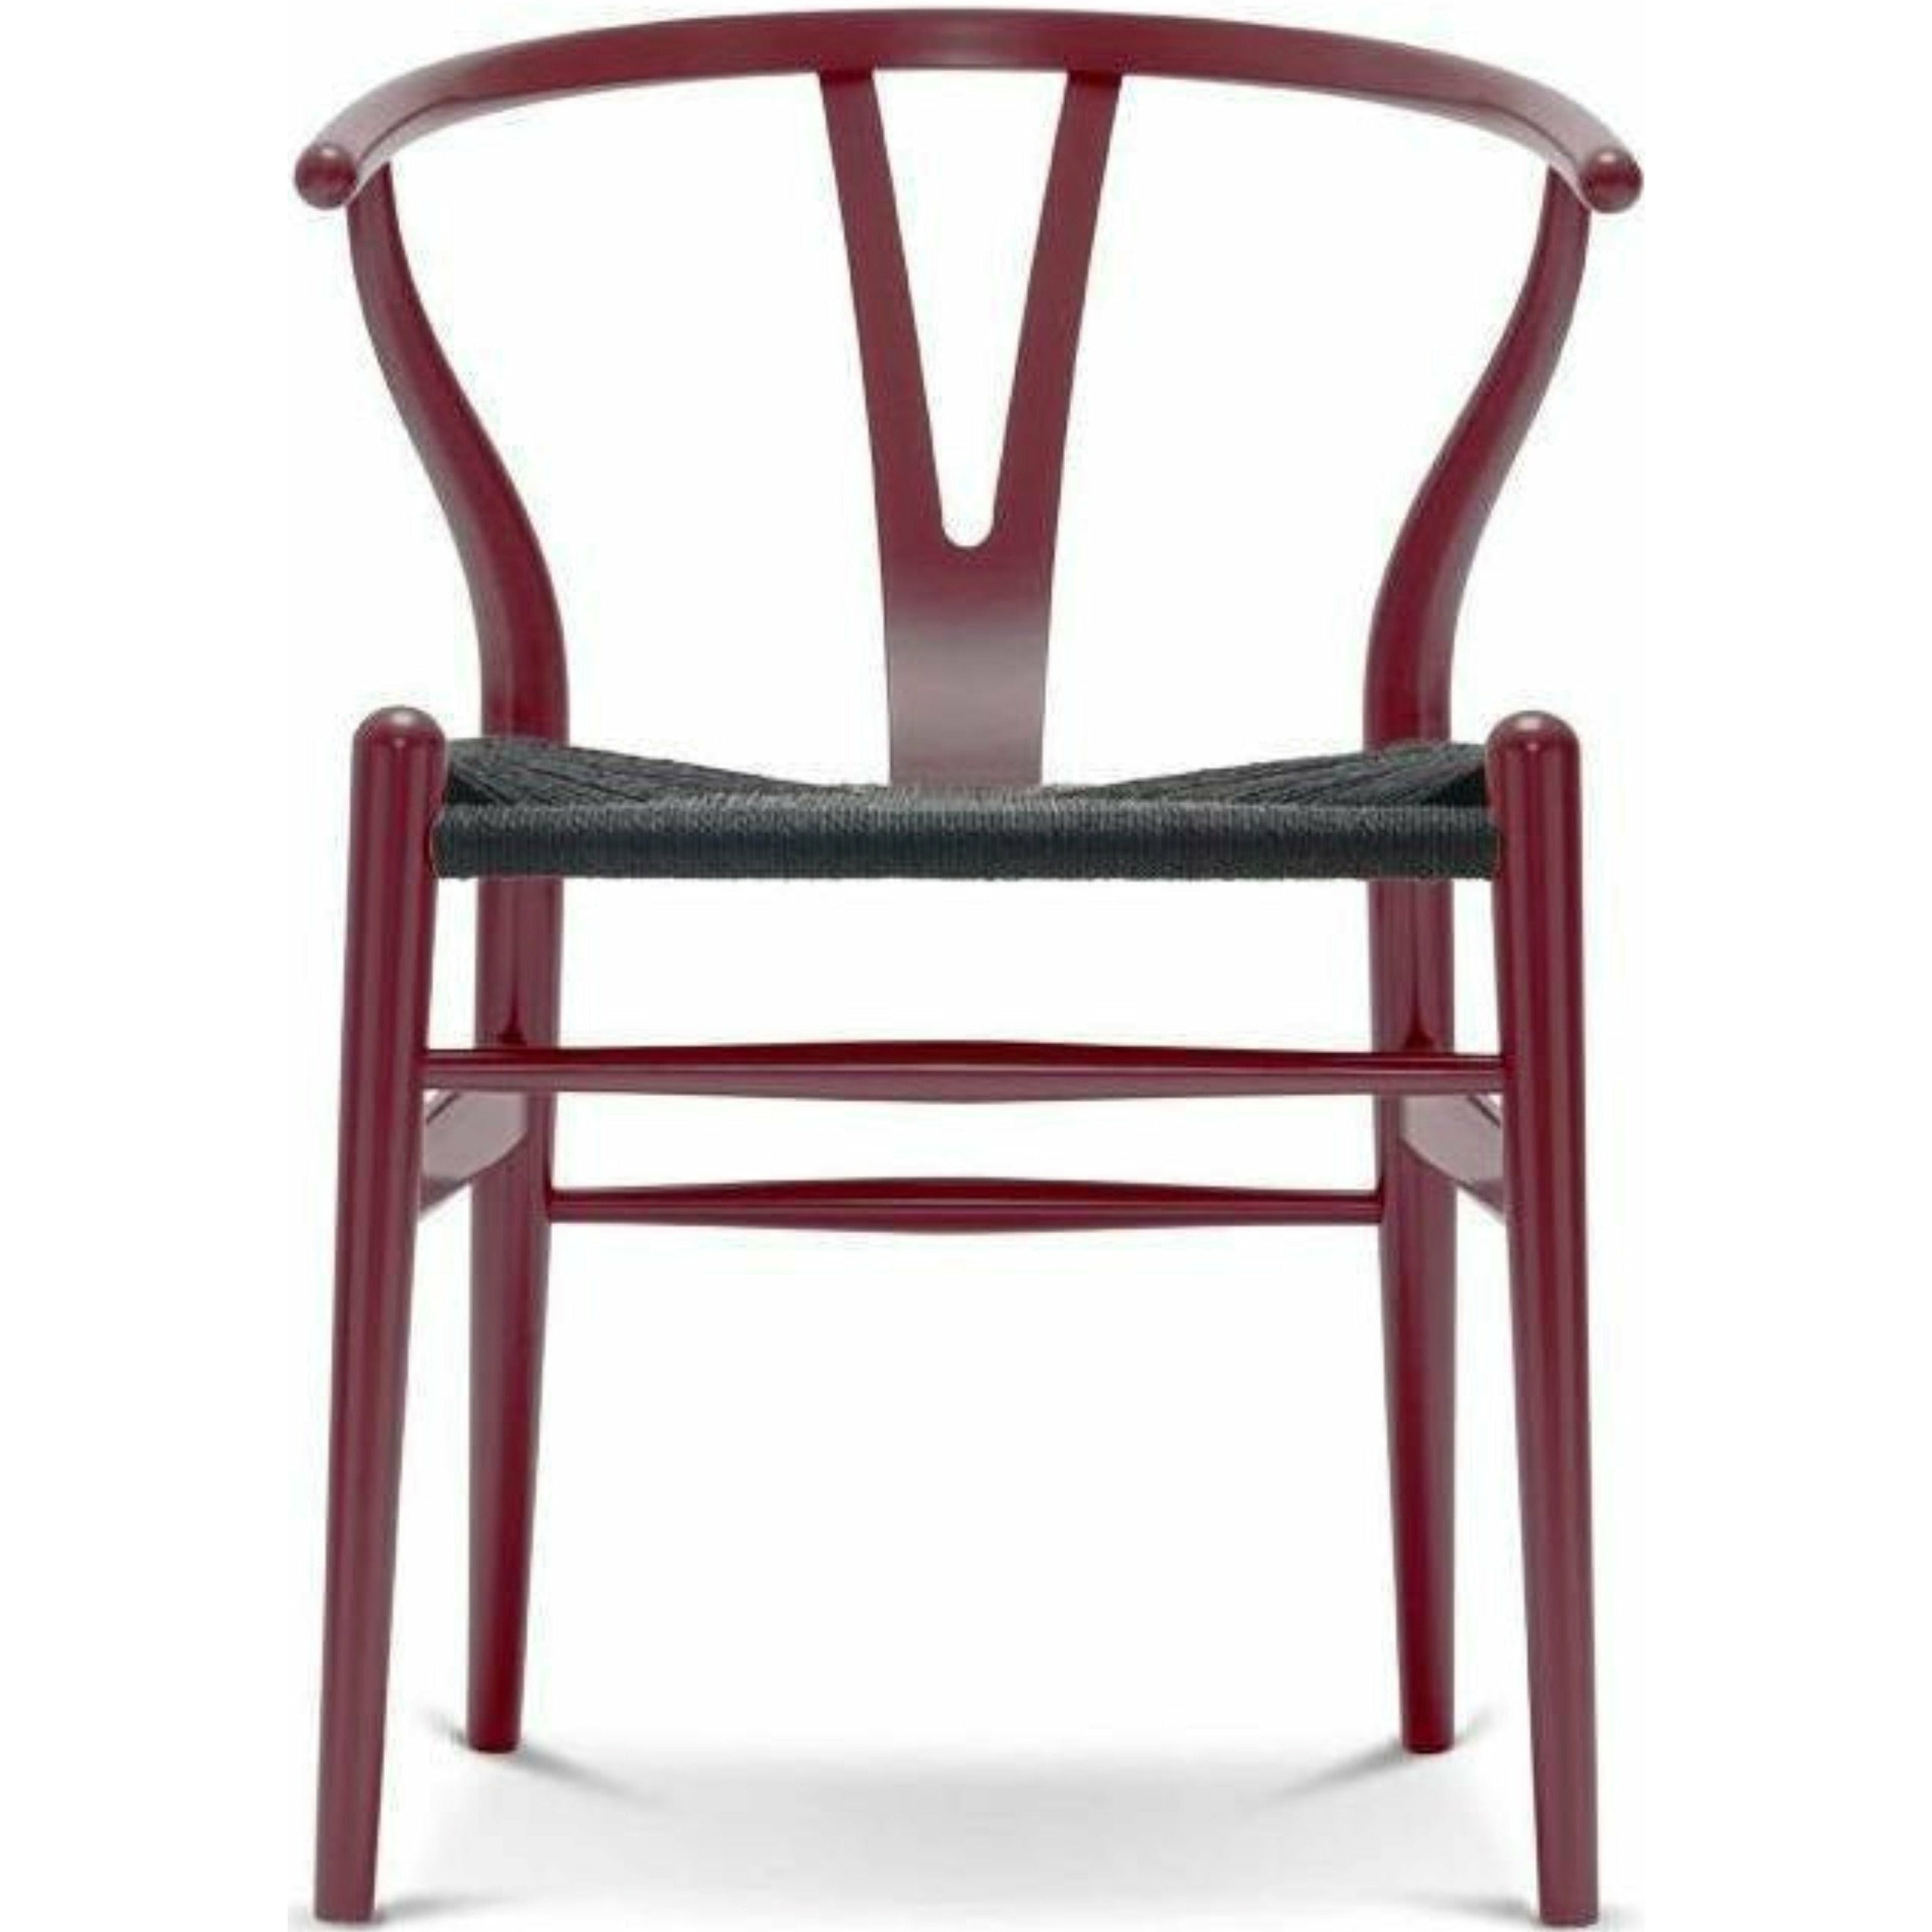 Carl Hansen CH24 Y Krzesek krzesło czarny papier papierowy, buk/jagoda czerwona